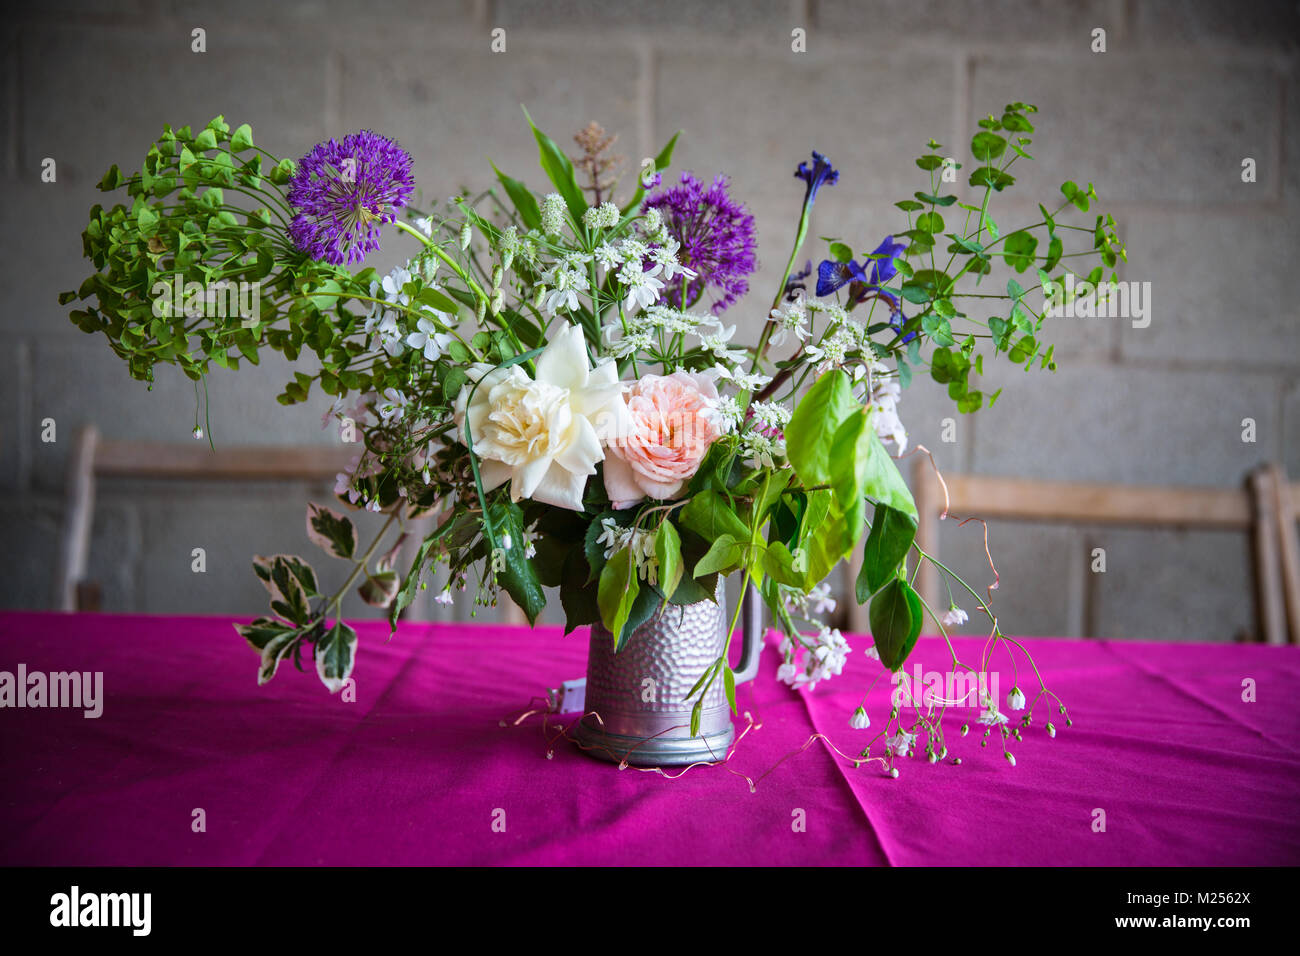 Table de mariage arrangement de fleurs sur nappe rose Banque D'Images